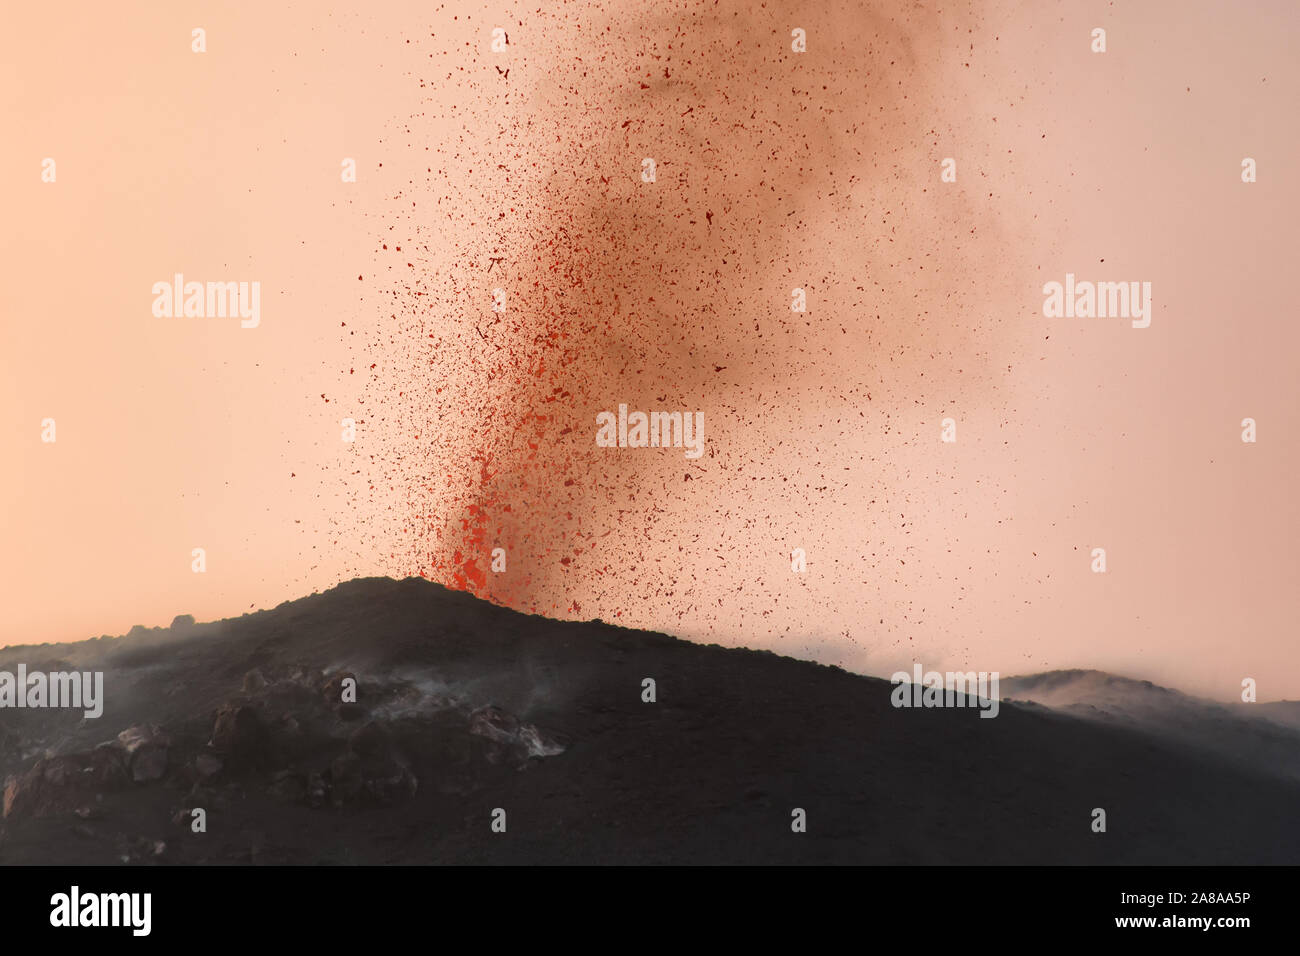 Eruzione esplosiva con proiezioni di magma e fumo arancione in uno dei tre crateri del principio attivo del vulcano di Stromboli, isole Eolie, Italia. Foto Stock